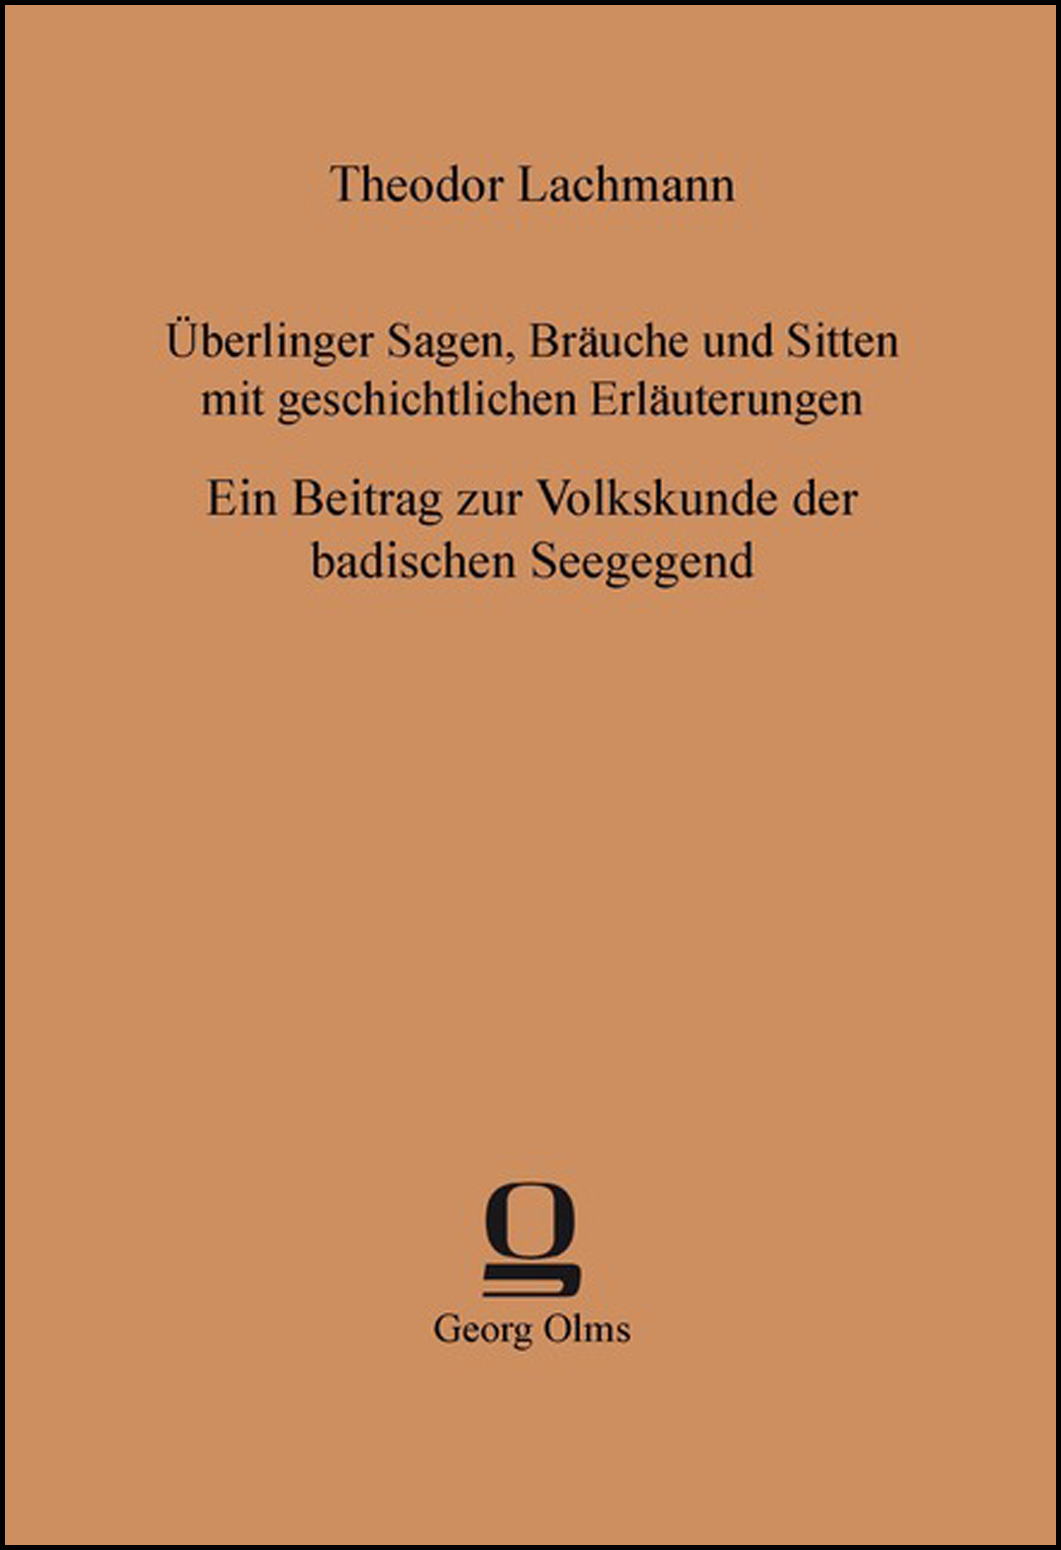 Überlinger Sagen, Bräuche und Sitten mit geschichtlichen Erläuterungen, Ein Beitrag zur Volkskunde der badischen Seegegend - Lachmann, Theodor